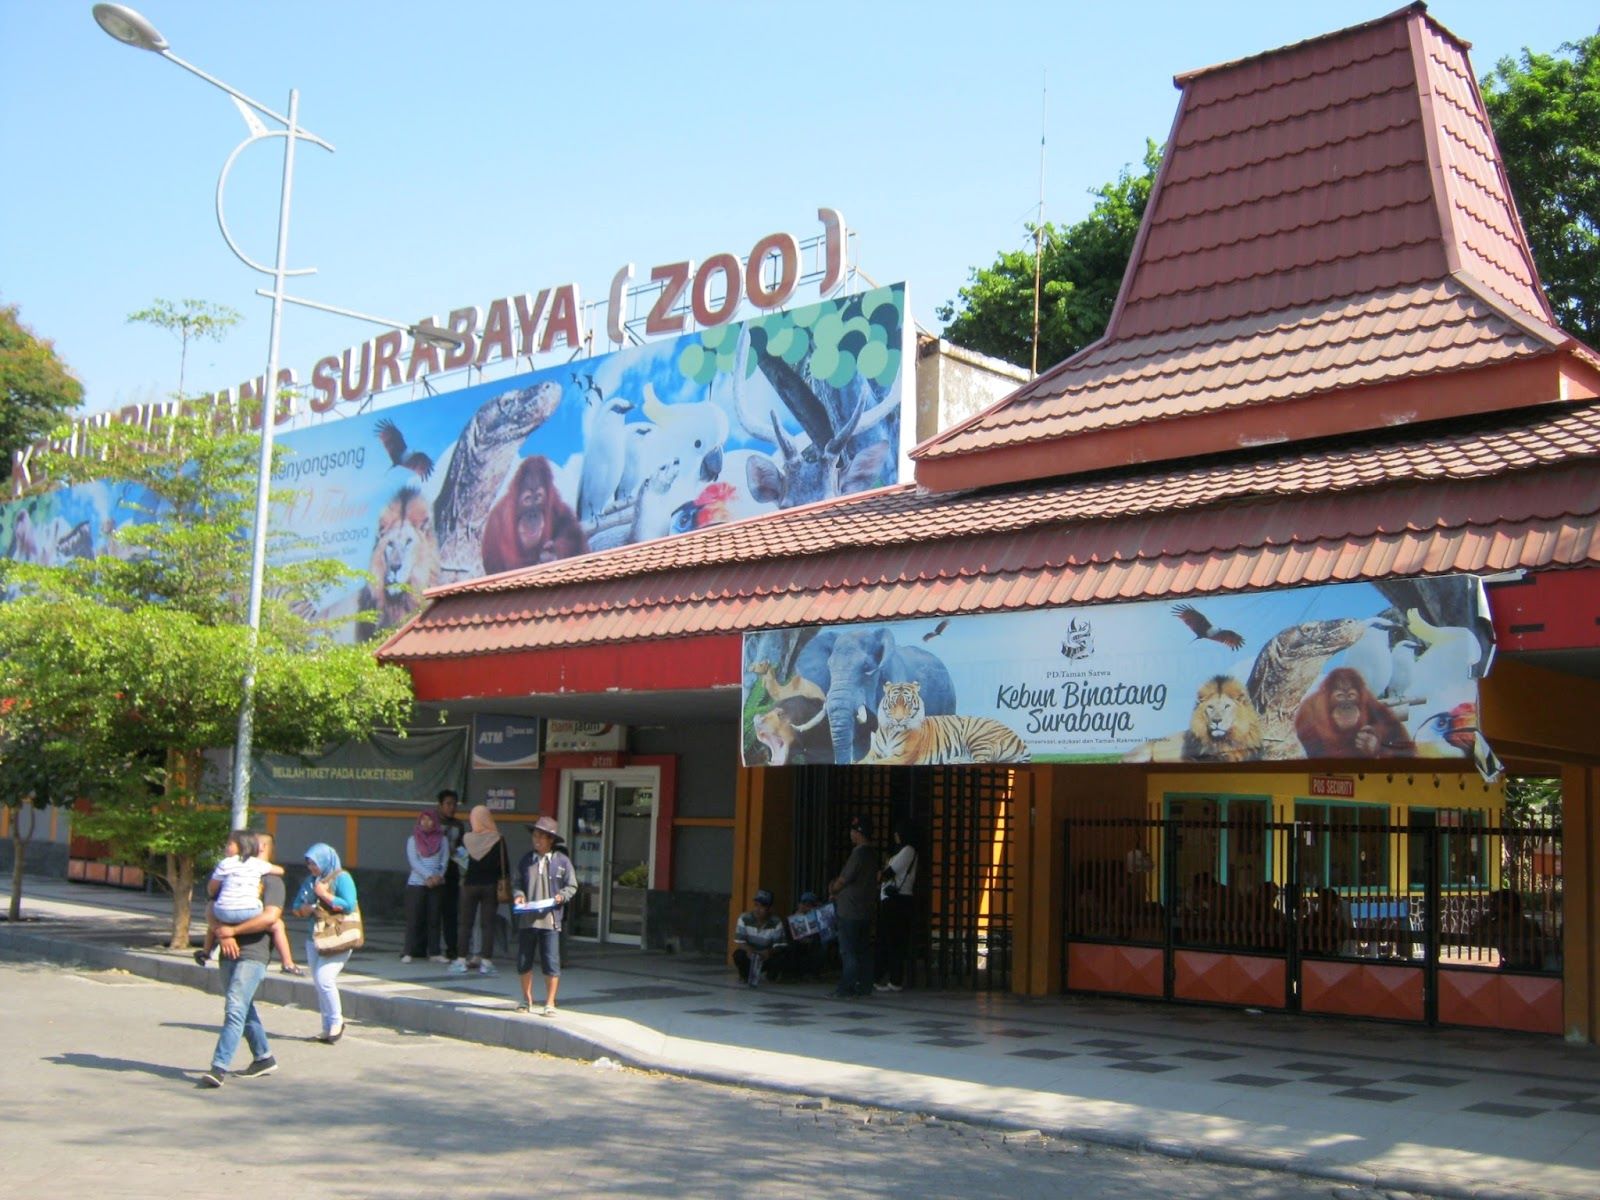 13-astonishing-facts-about-surabaya-zoo